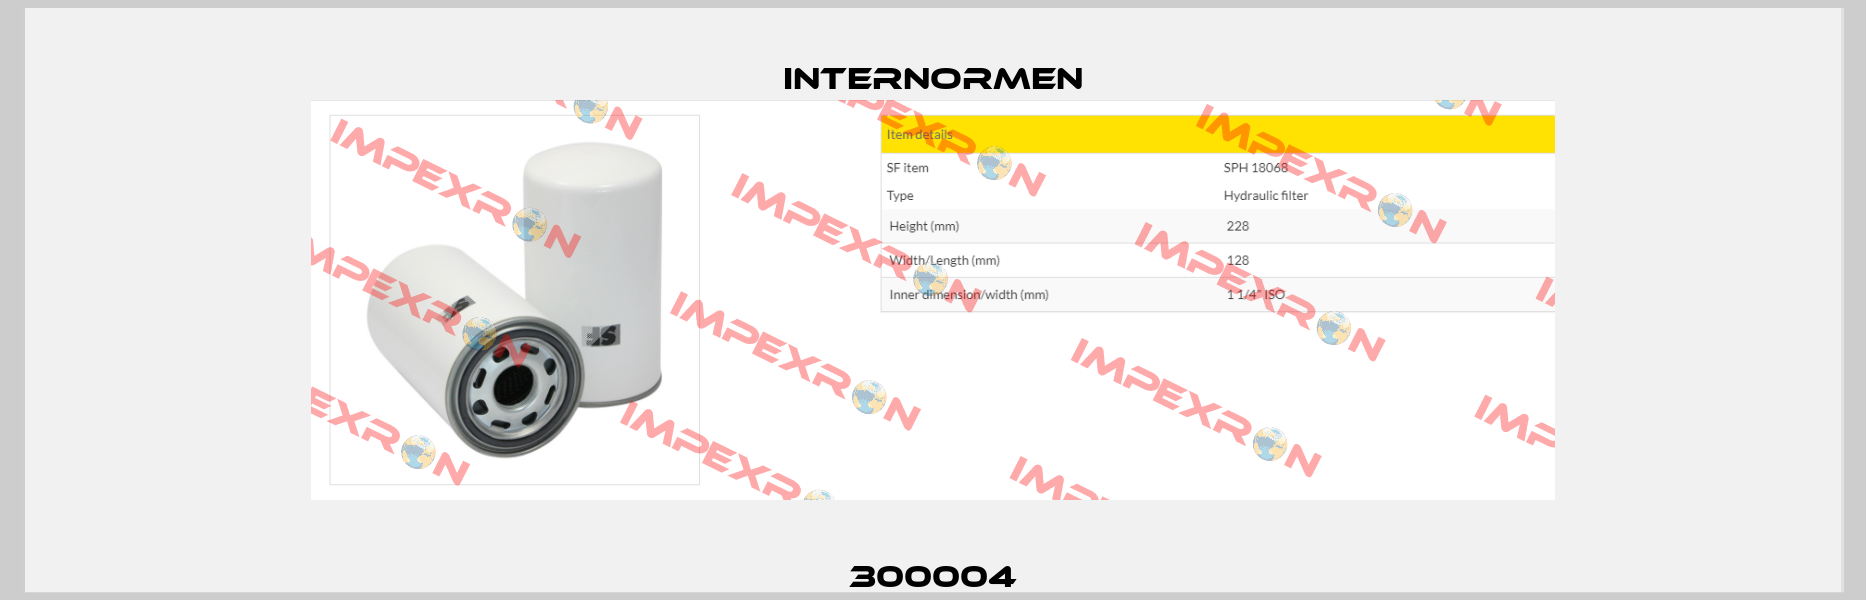 300004 Internormen